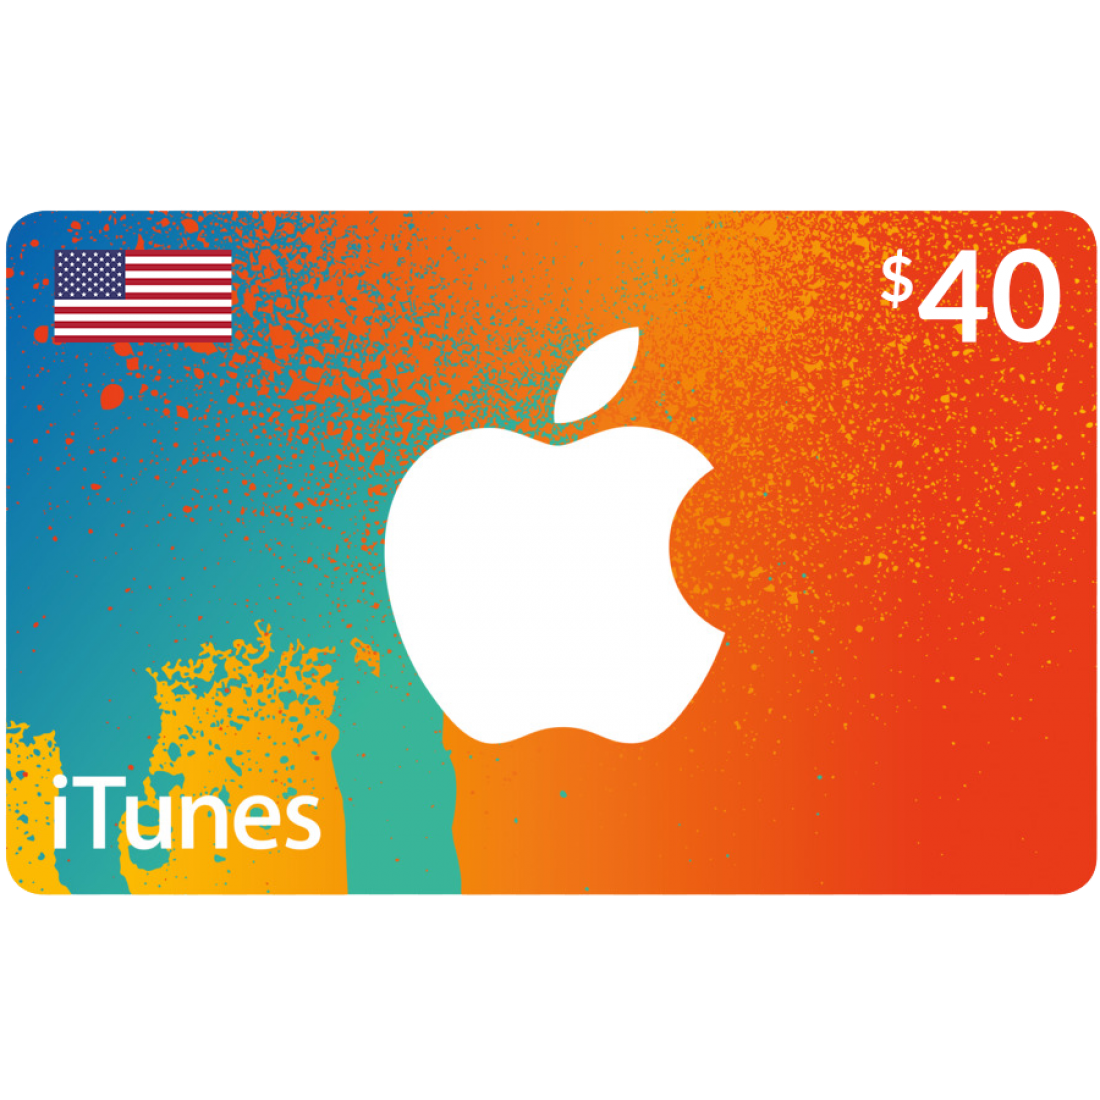 گیفت کارت اپل (آمریکا 40 دلار) تحویل آنی